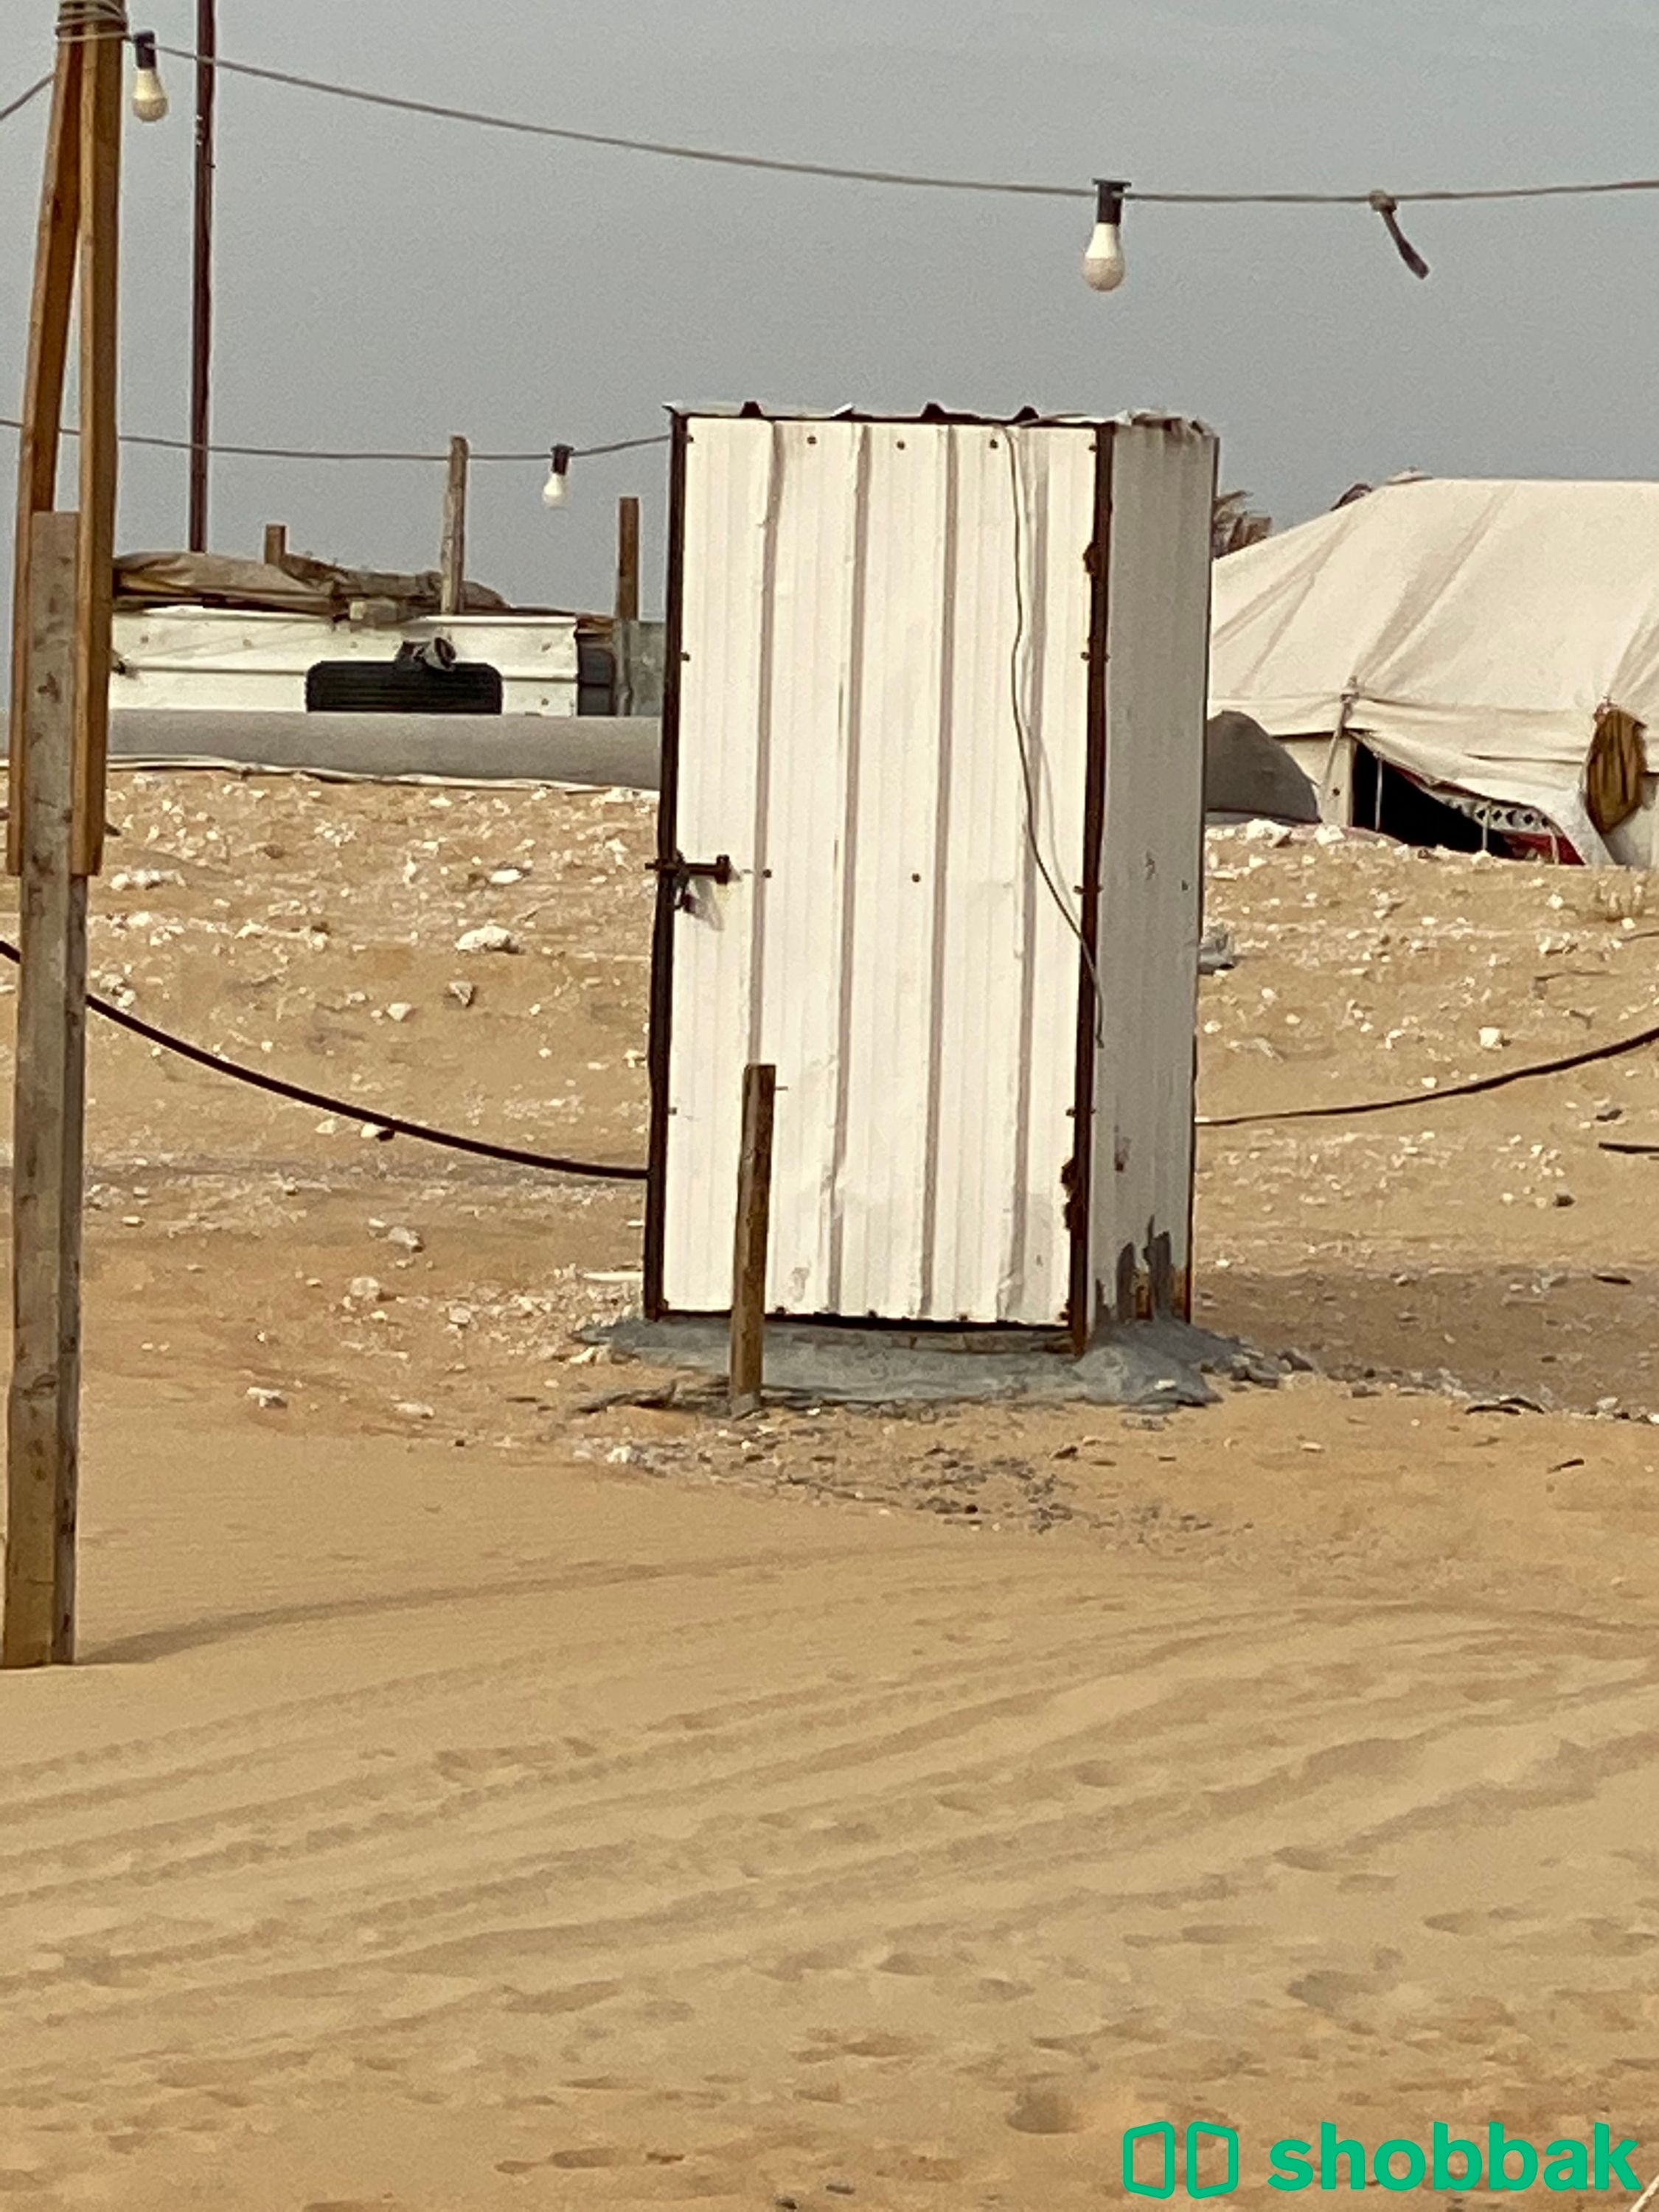 مخيم العبير للايجار اليومي الدمام طريق المطار شباك السعودية